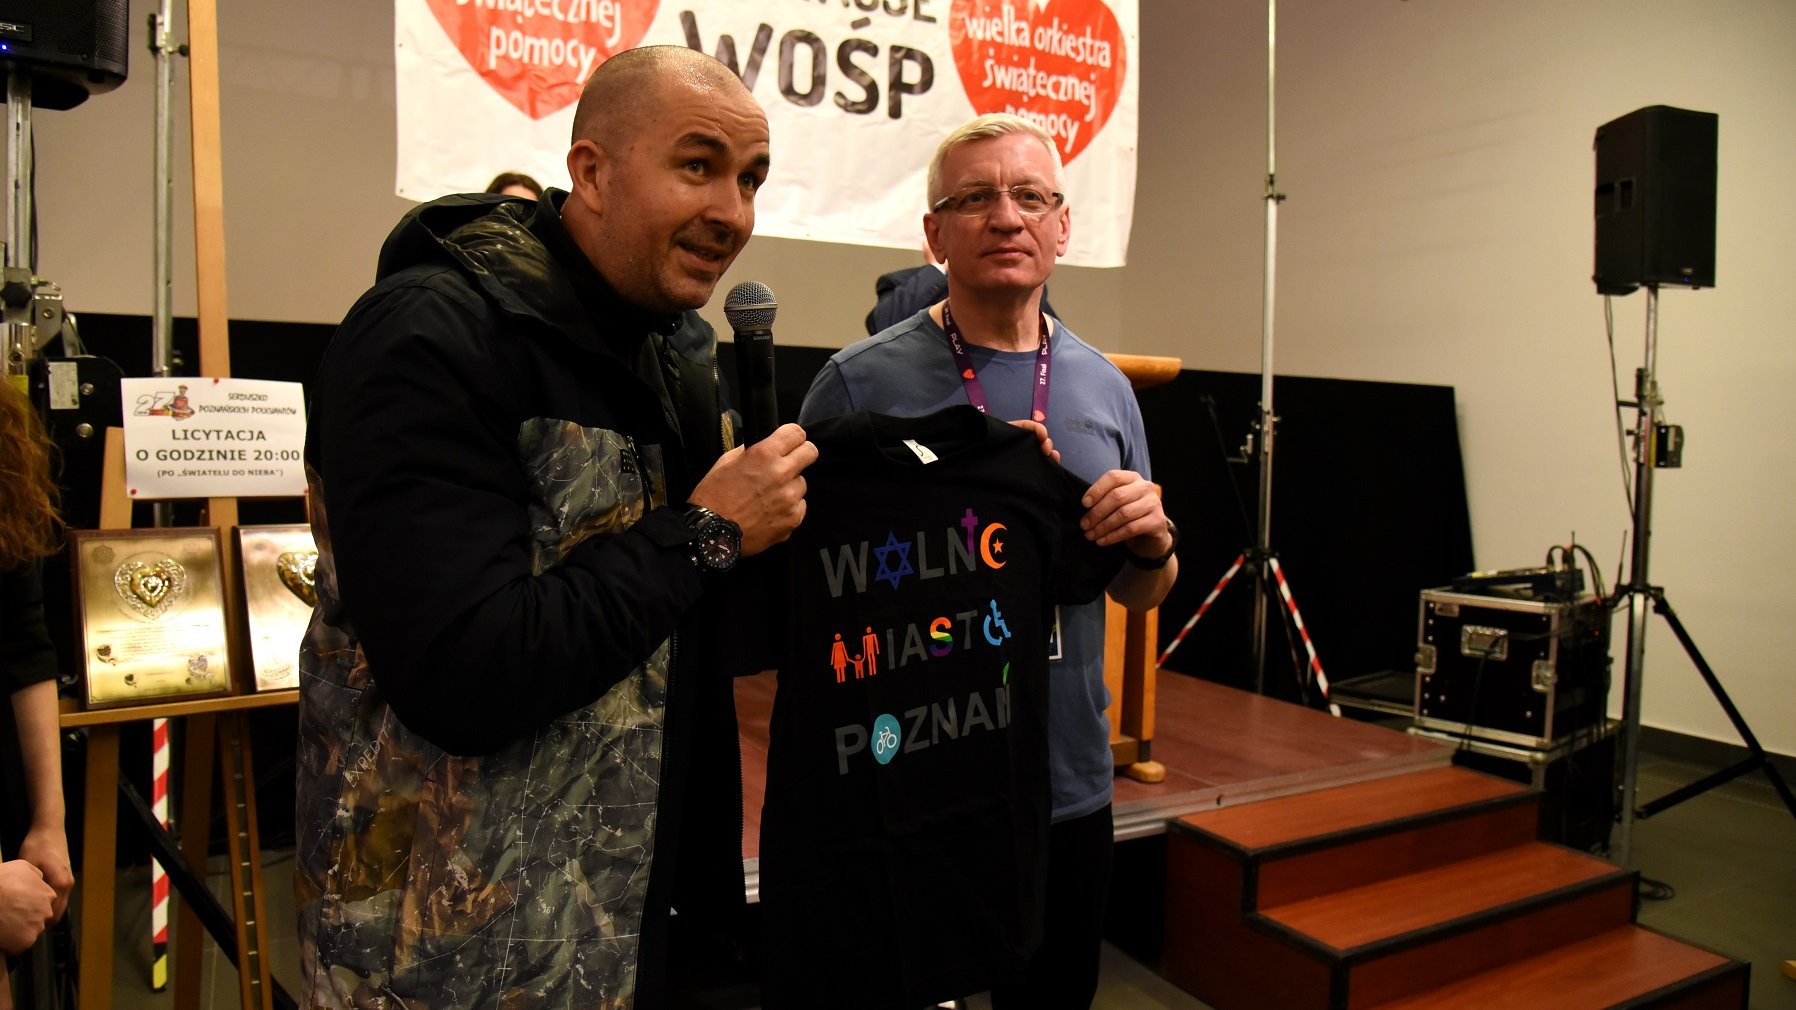 Na aukcję Jacek Jaśkowiak przeznaczył również koszulki "Wolne Miasto Poznań"